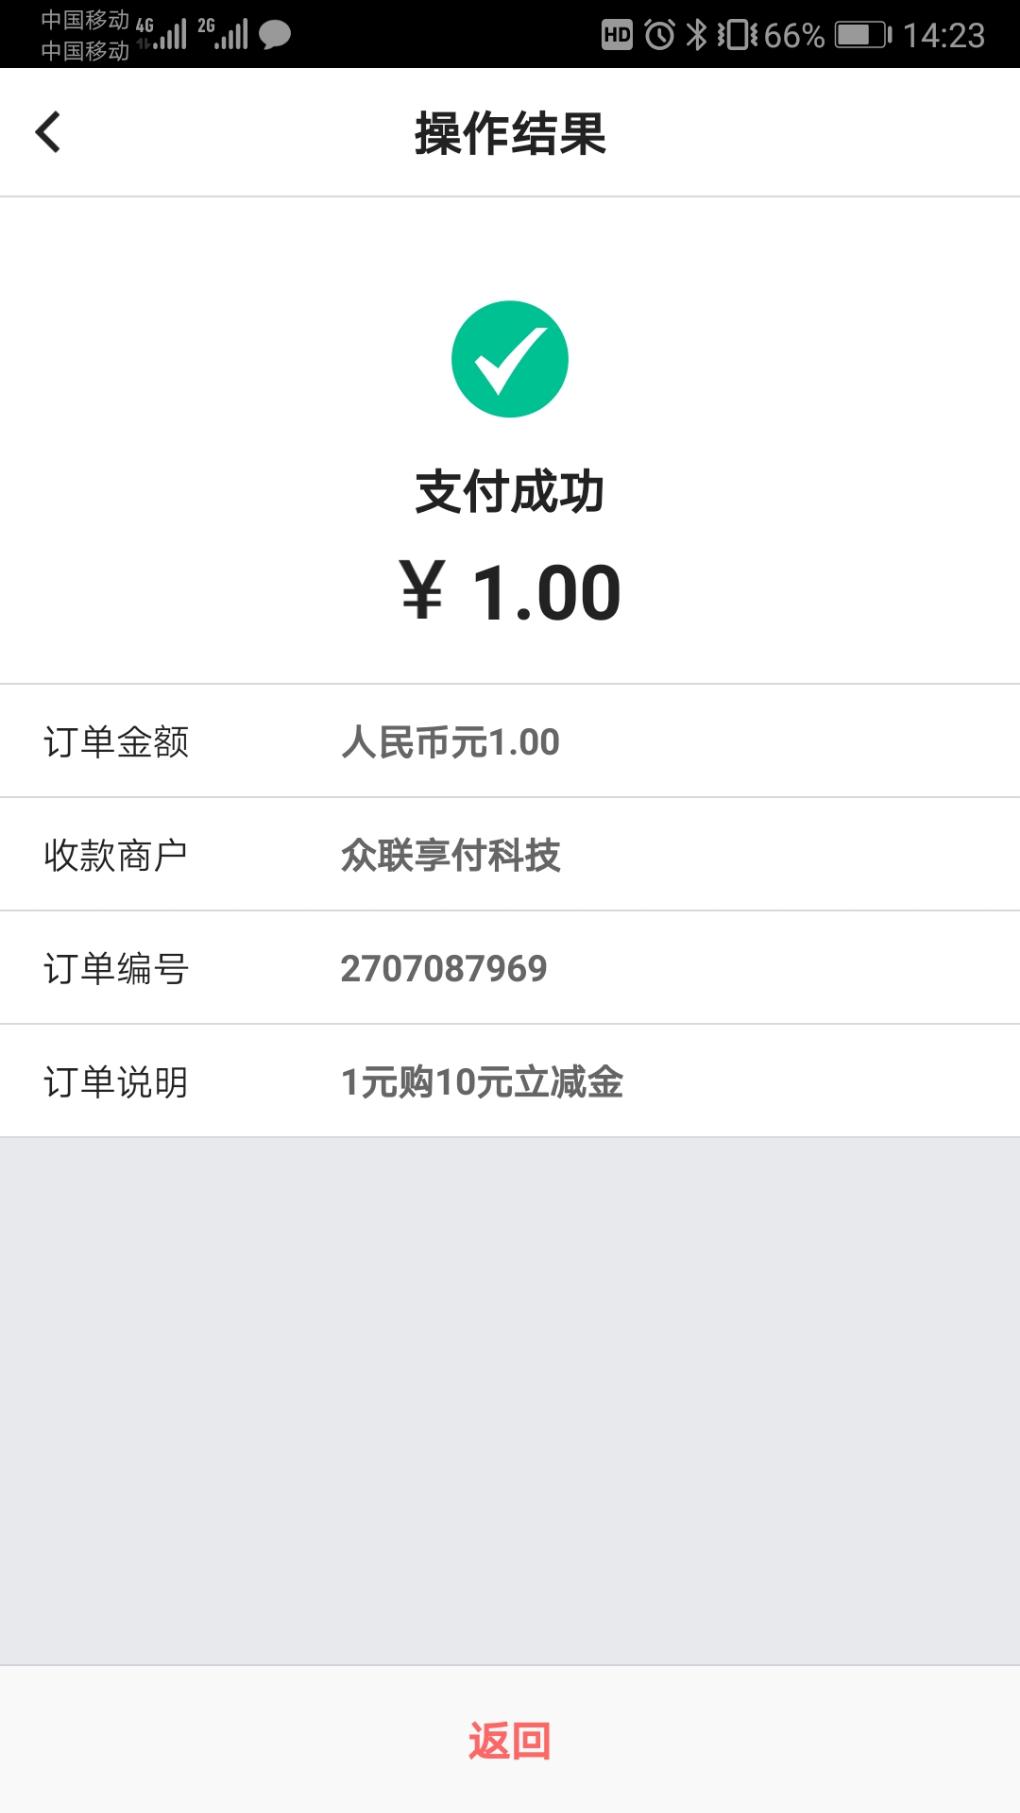 中行北京分行xing/用卡10元立减金-惠小助(52huixz.com)